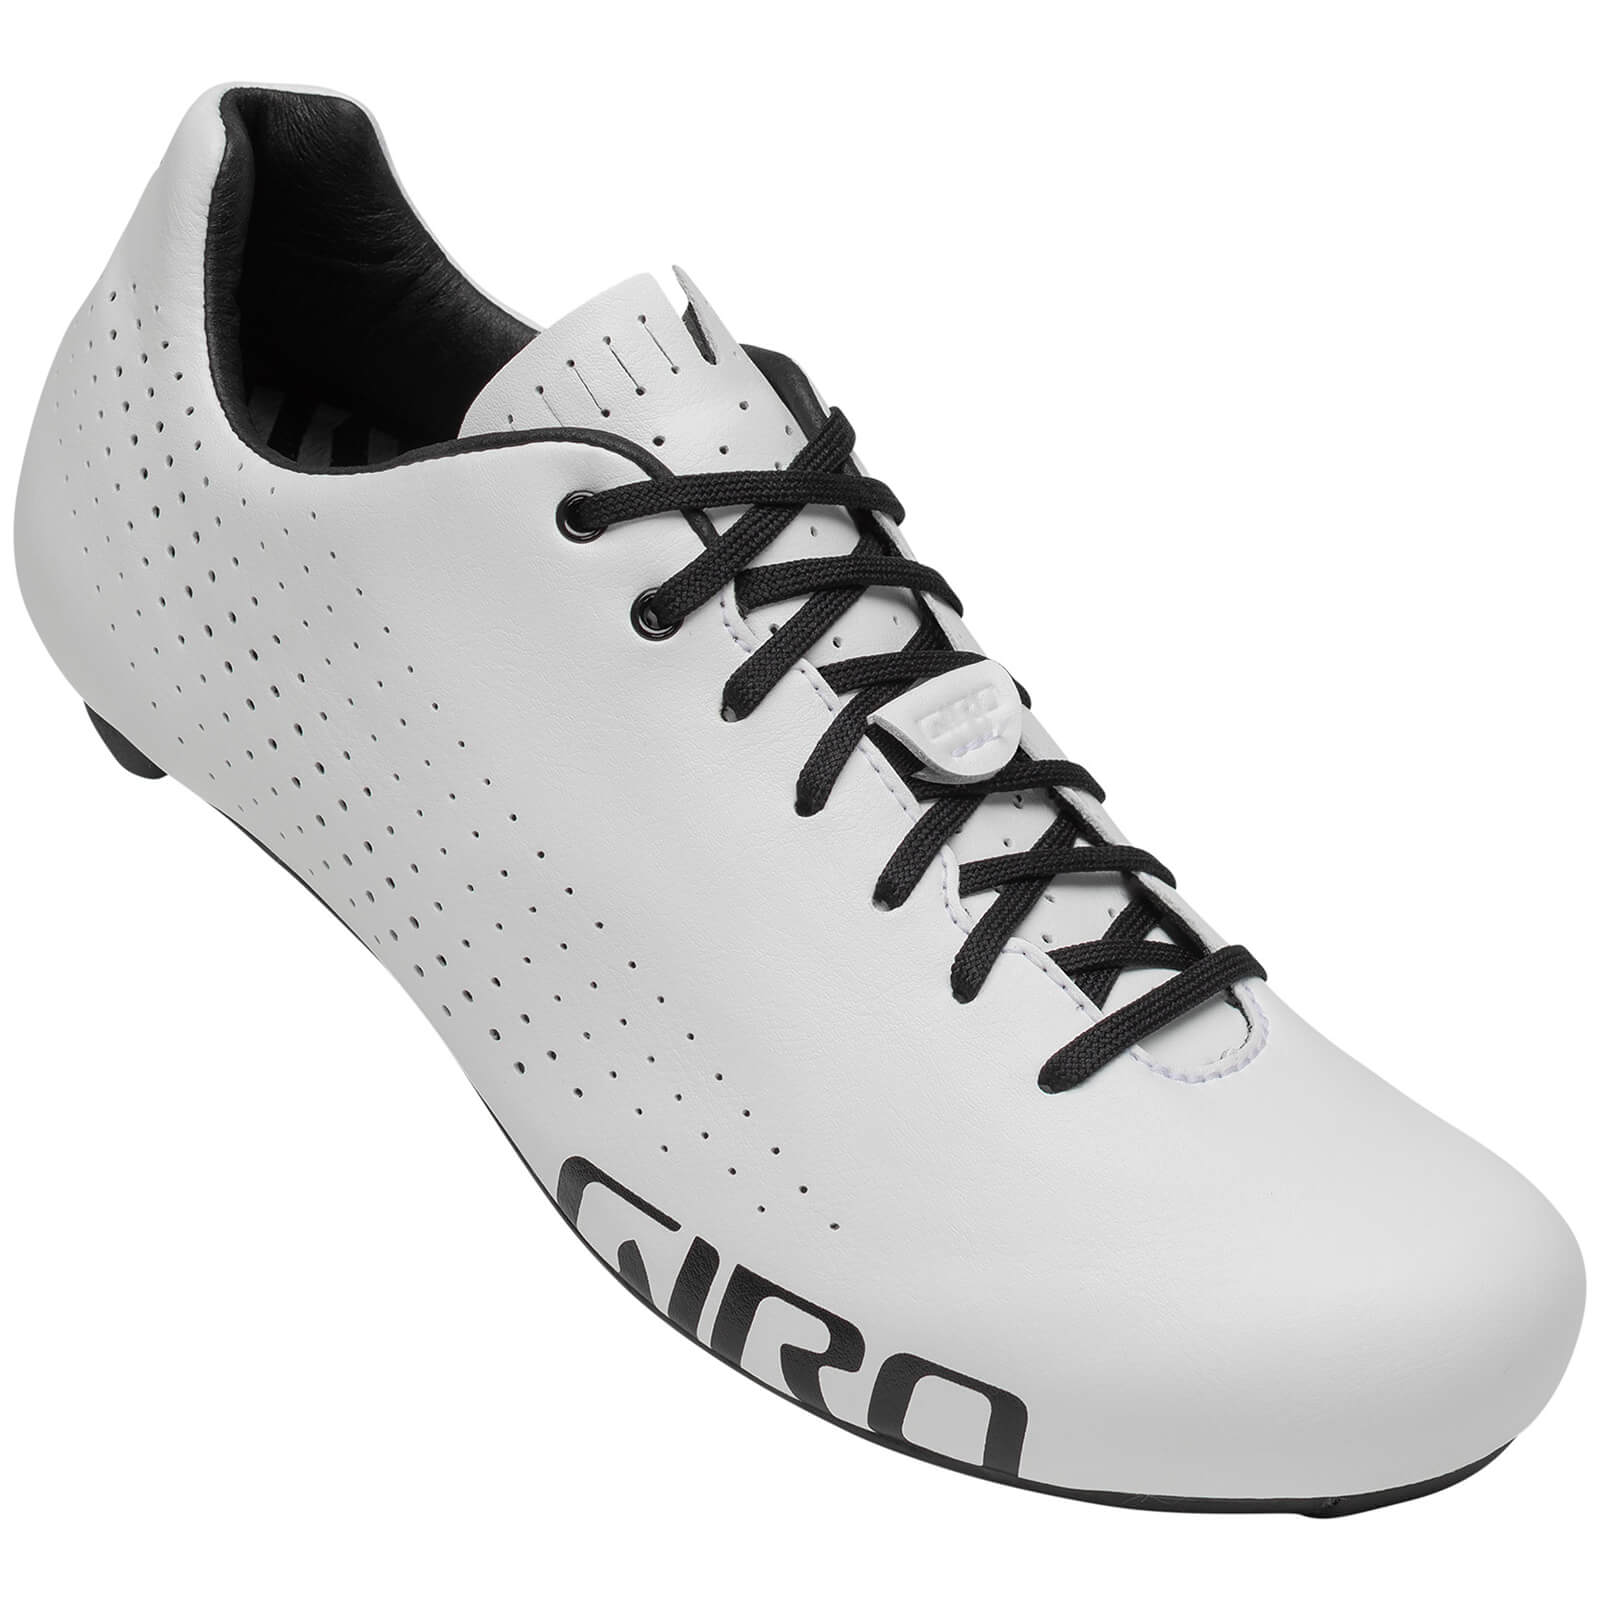 Giro Empire Road Shoe - EU 44 - White